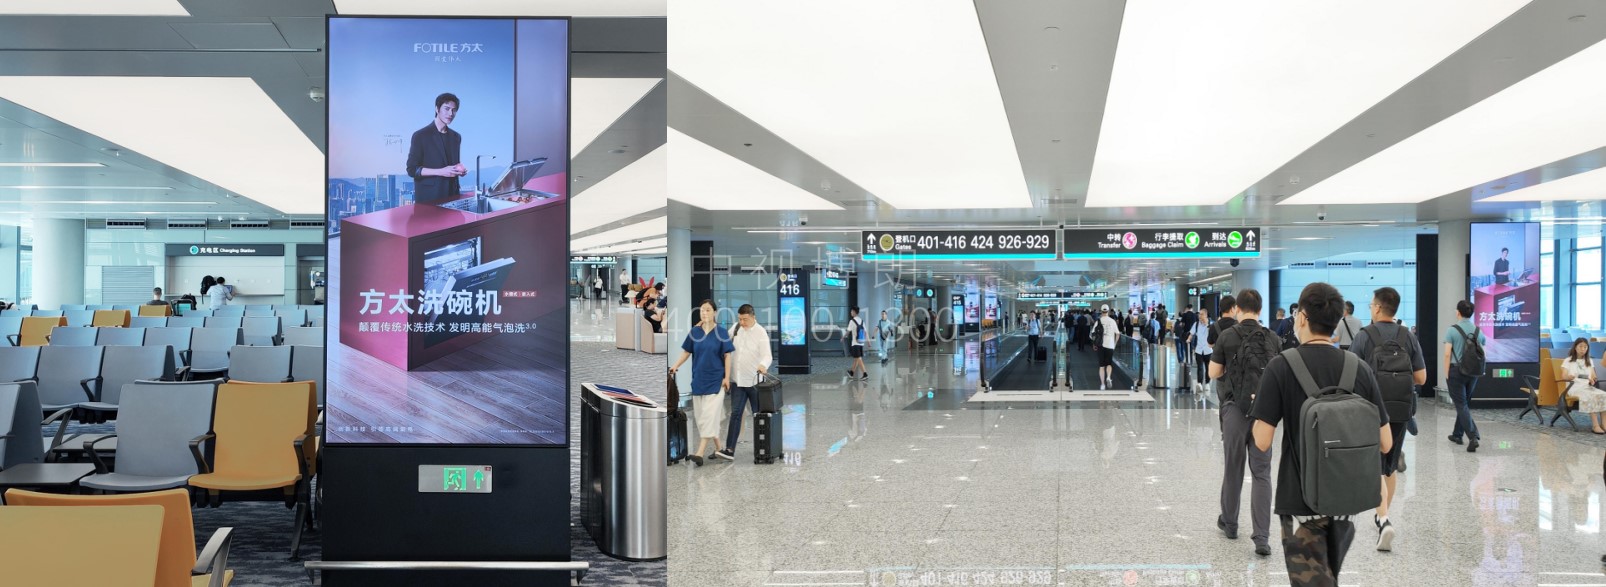 杭州萧山机场广告-T4国内混流指廊刷屏套装